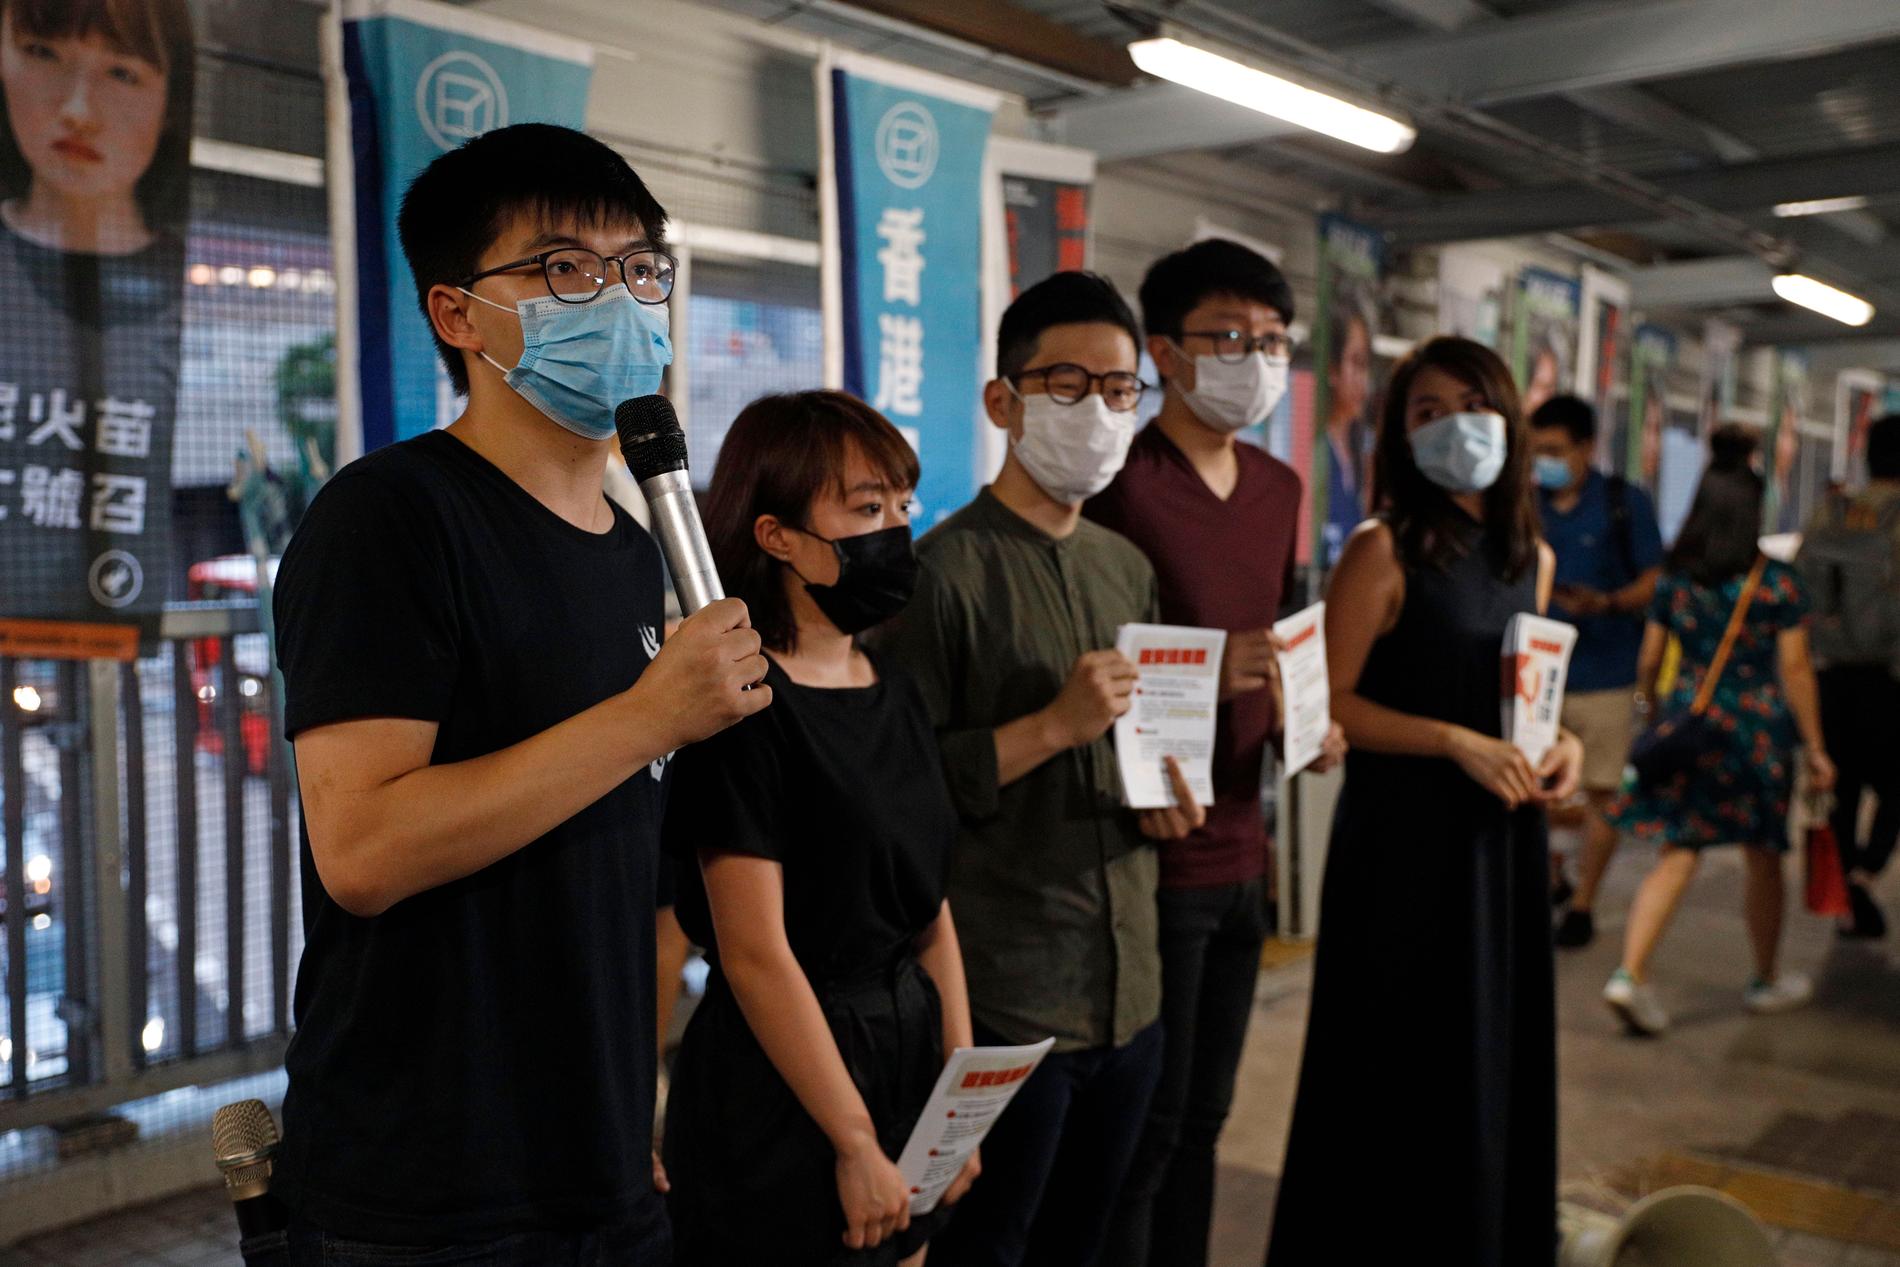 En av ledarfigurerna för demokratirörelsen, Joshua Wong (till vänster), talar till pressen under en protest mot Kinas utkast till säkerhetslagen.